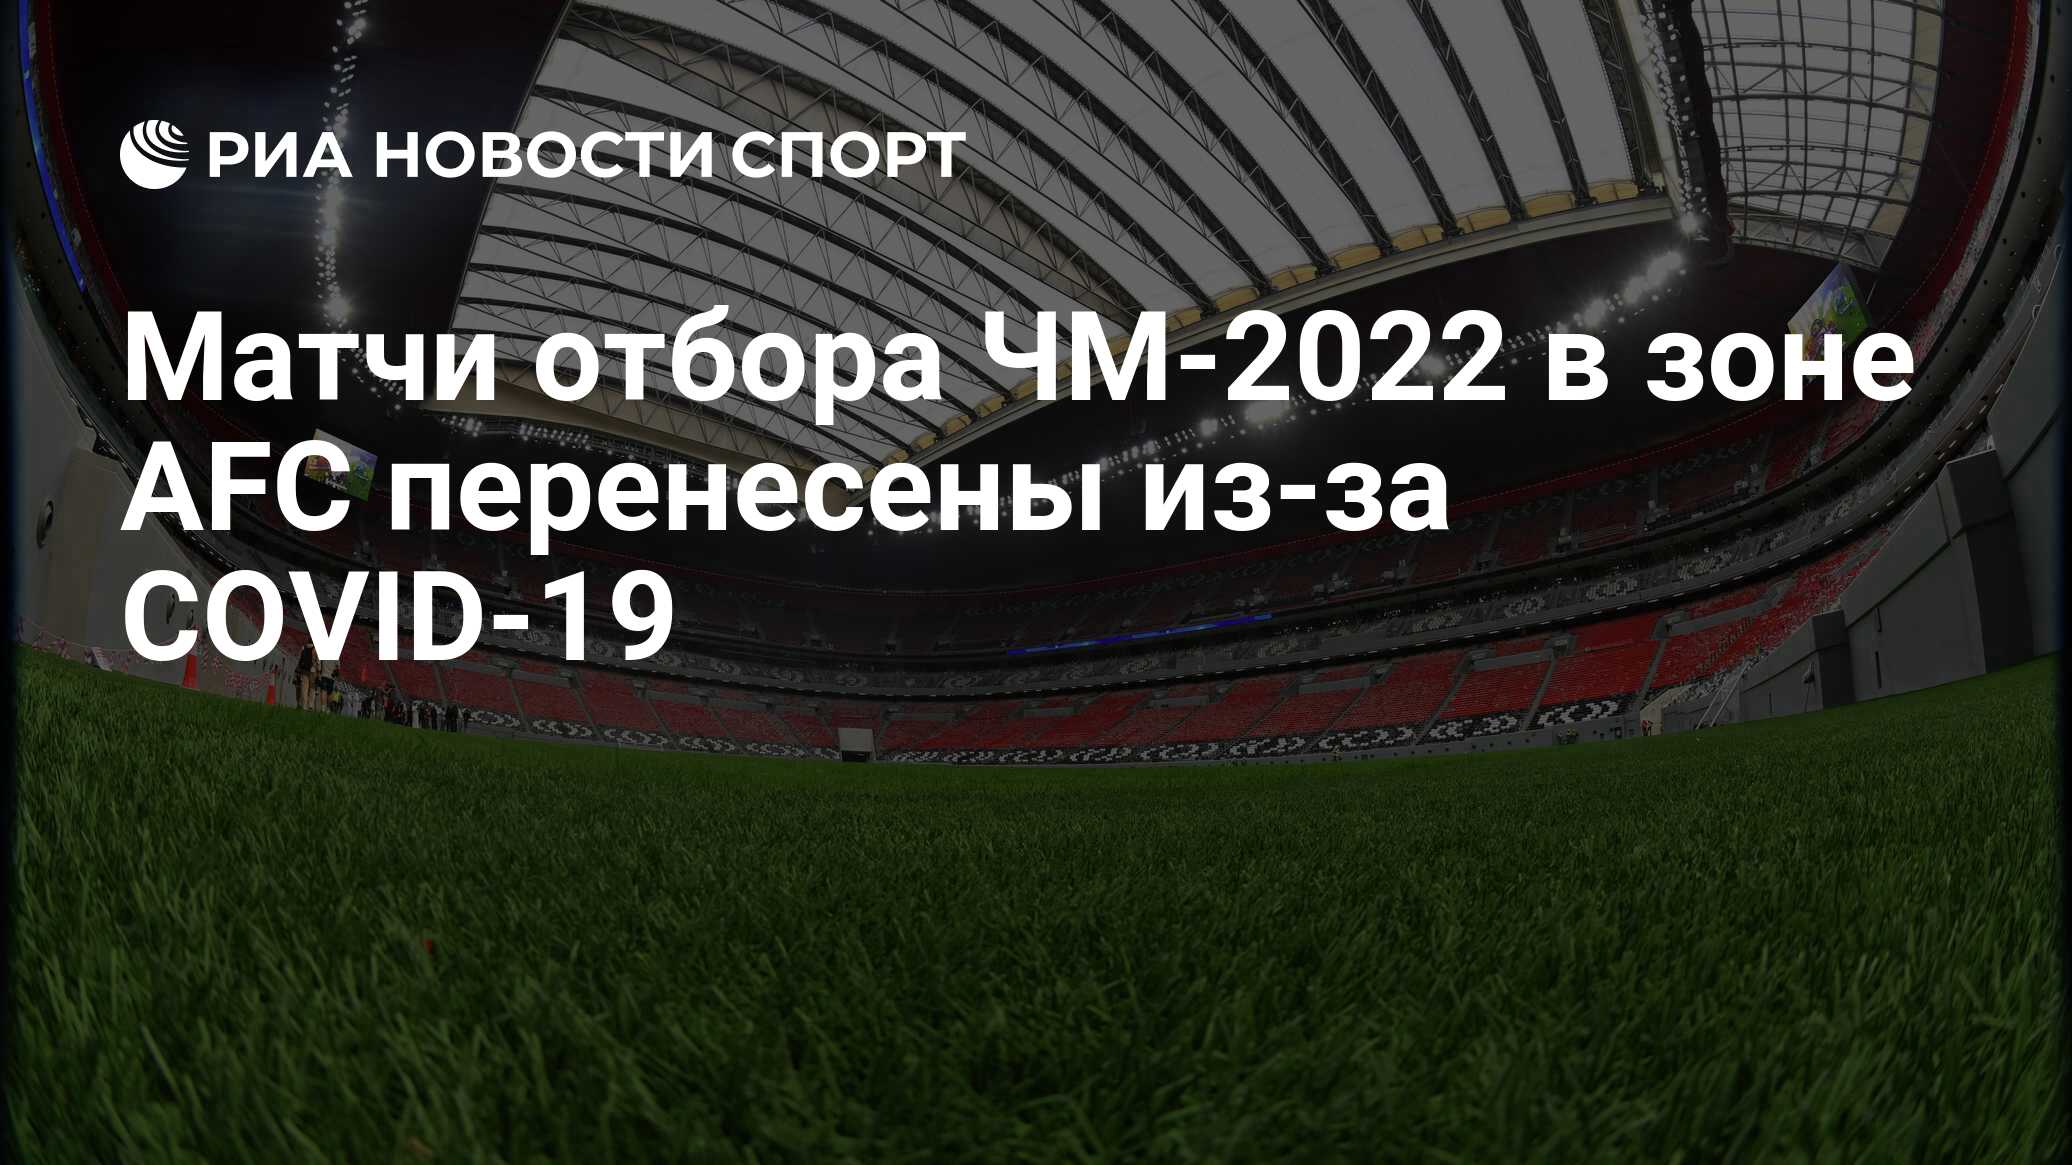 Matchi Otbora Chm 2022 V Zone Afs Pereneseny Iz Za Covid 19 Ria Novosti Sport 26 03 2021